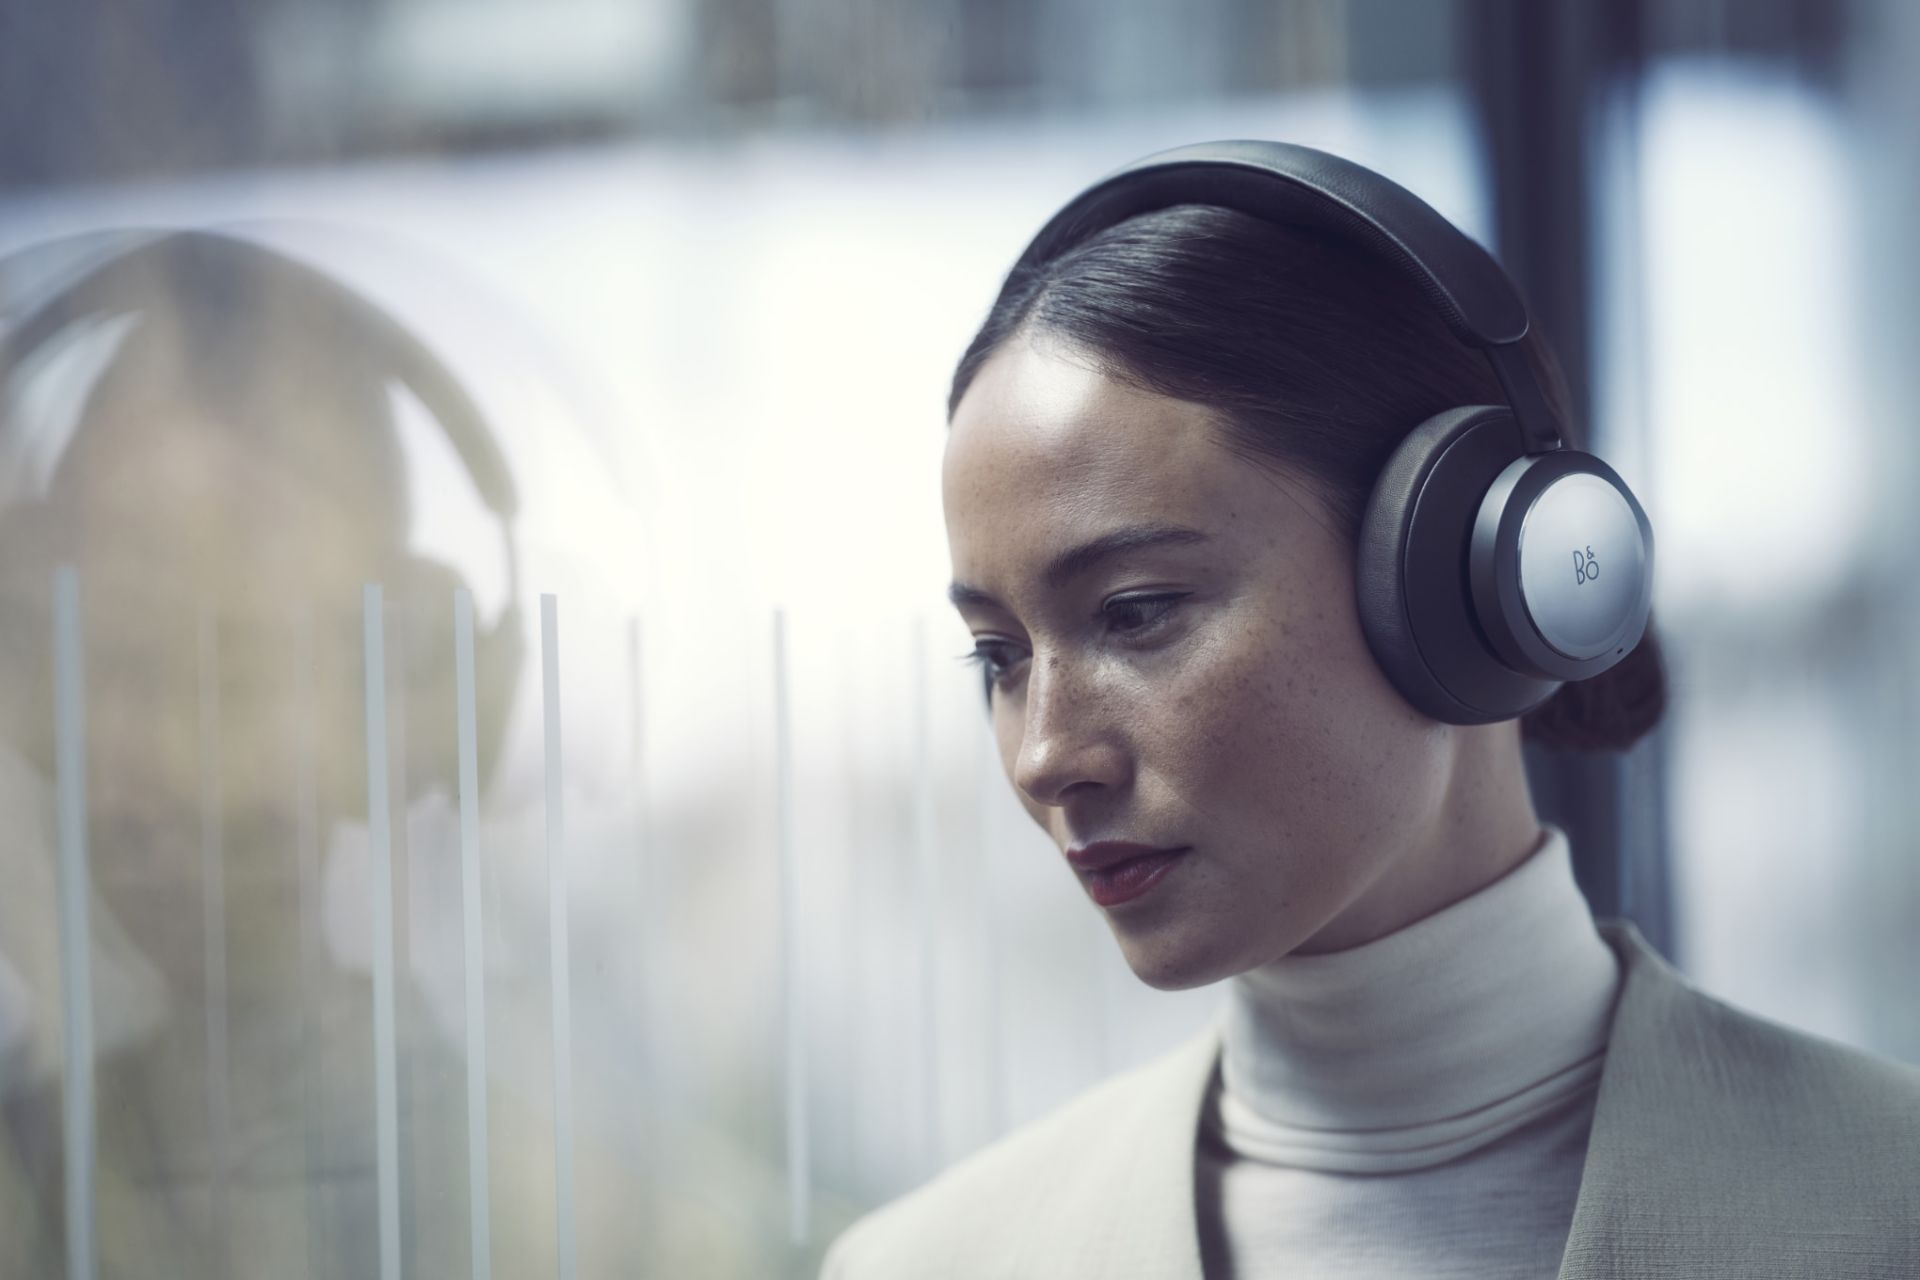 هدفون بیوپلی پورتال بنگ اند اولافسن / B&O Beoplay Portal روی گوش یک زن